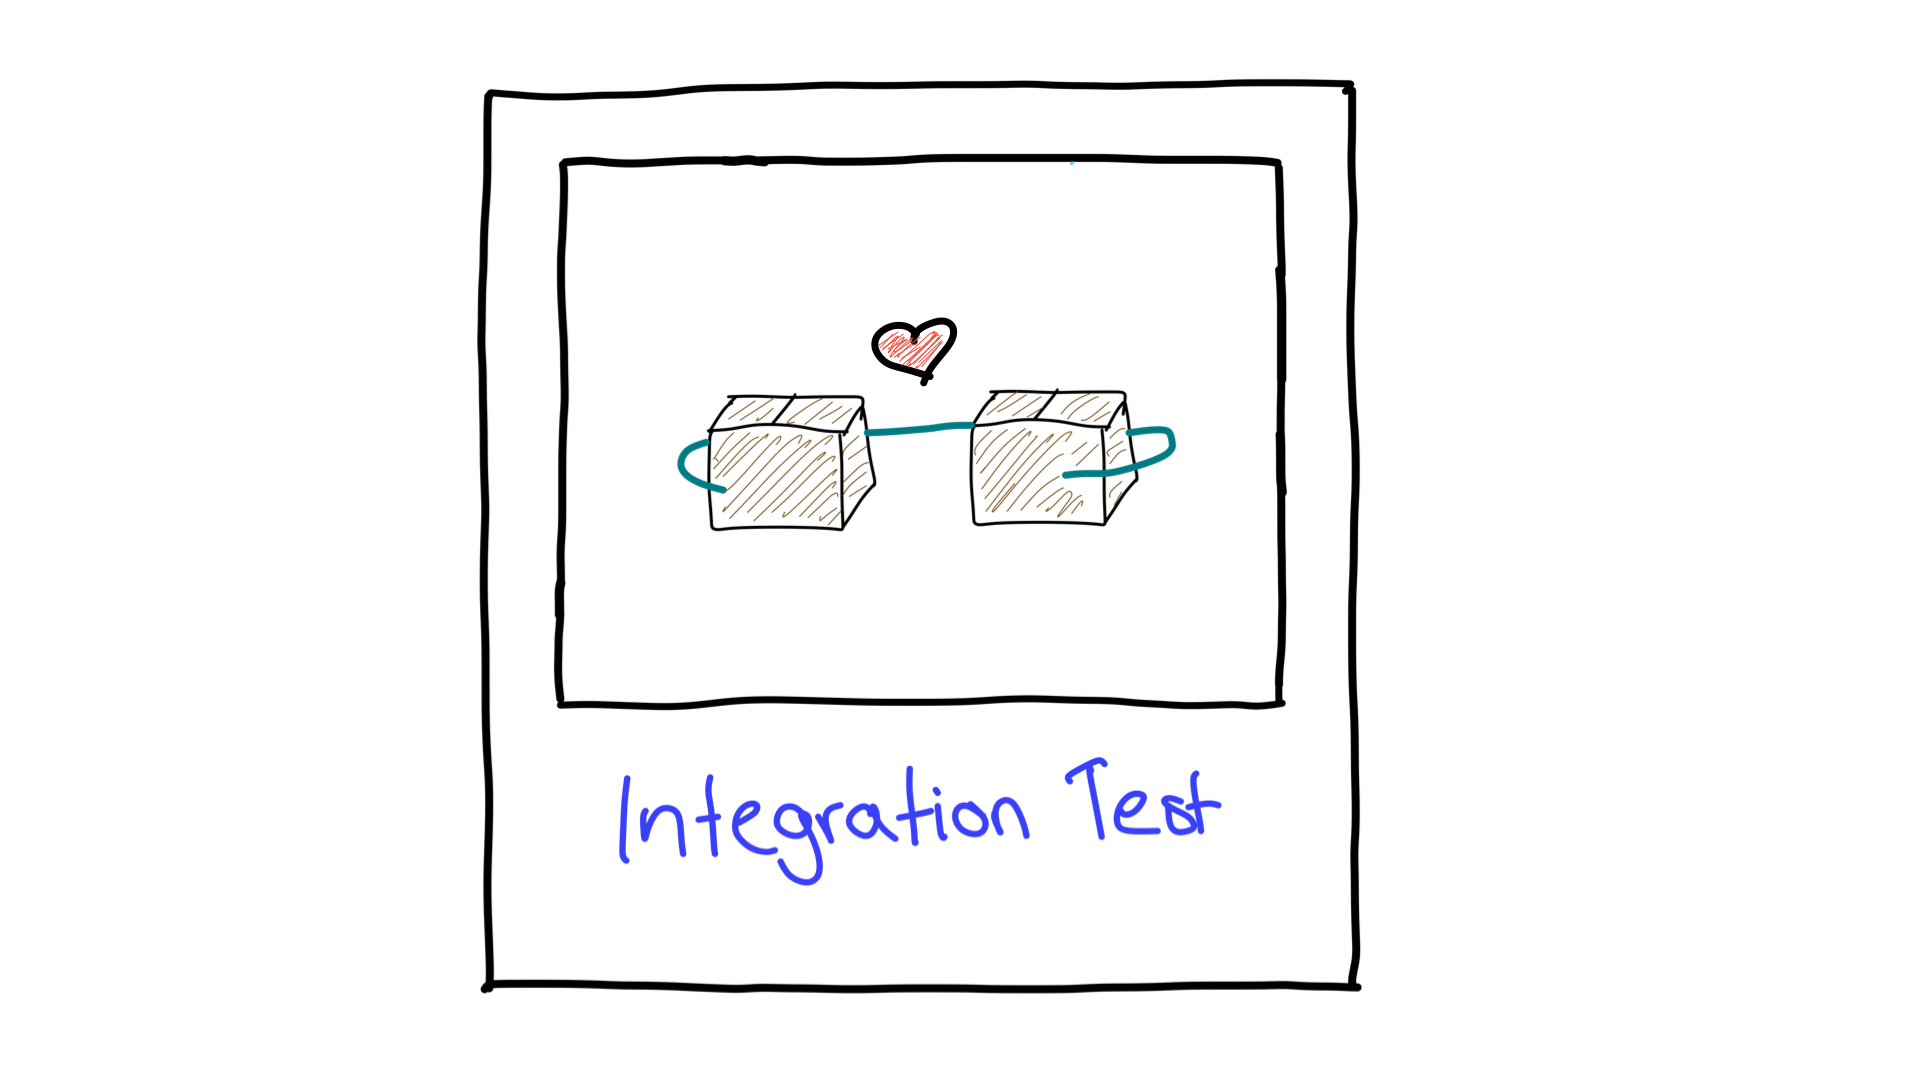 תיאור פשוט של בדיקת אינטגרציה שמראה איך שתי יחידות פועלות יחד.